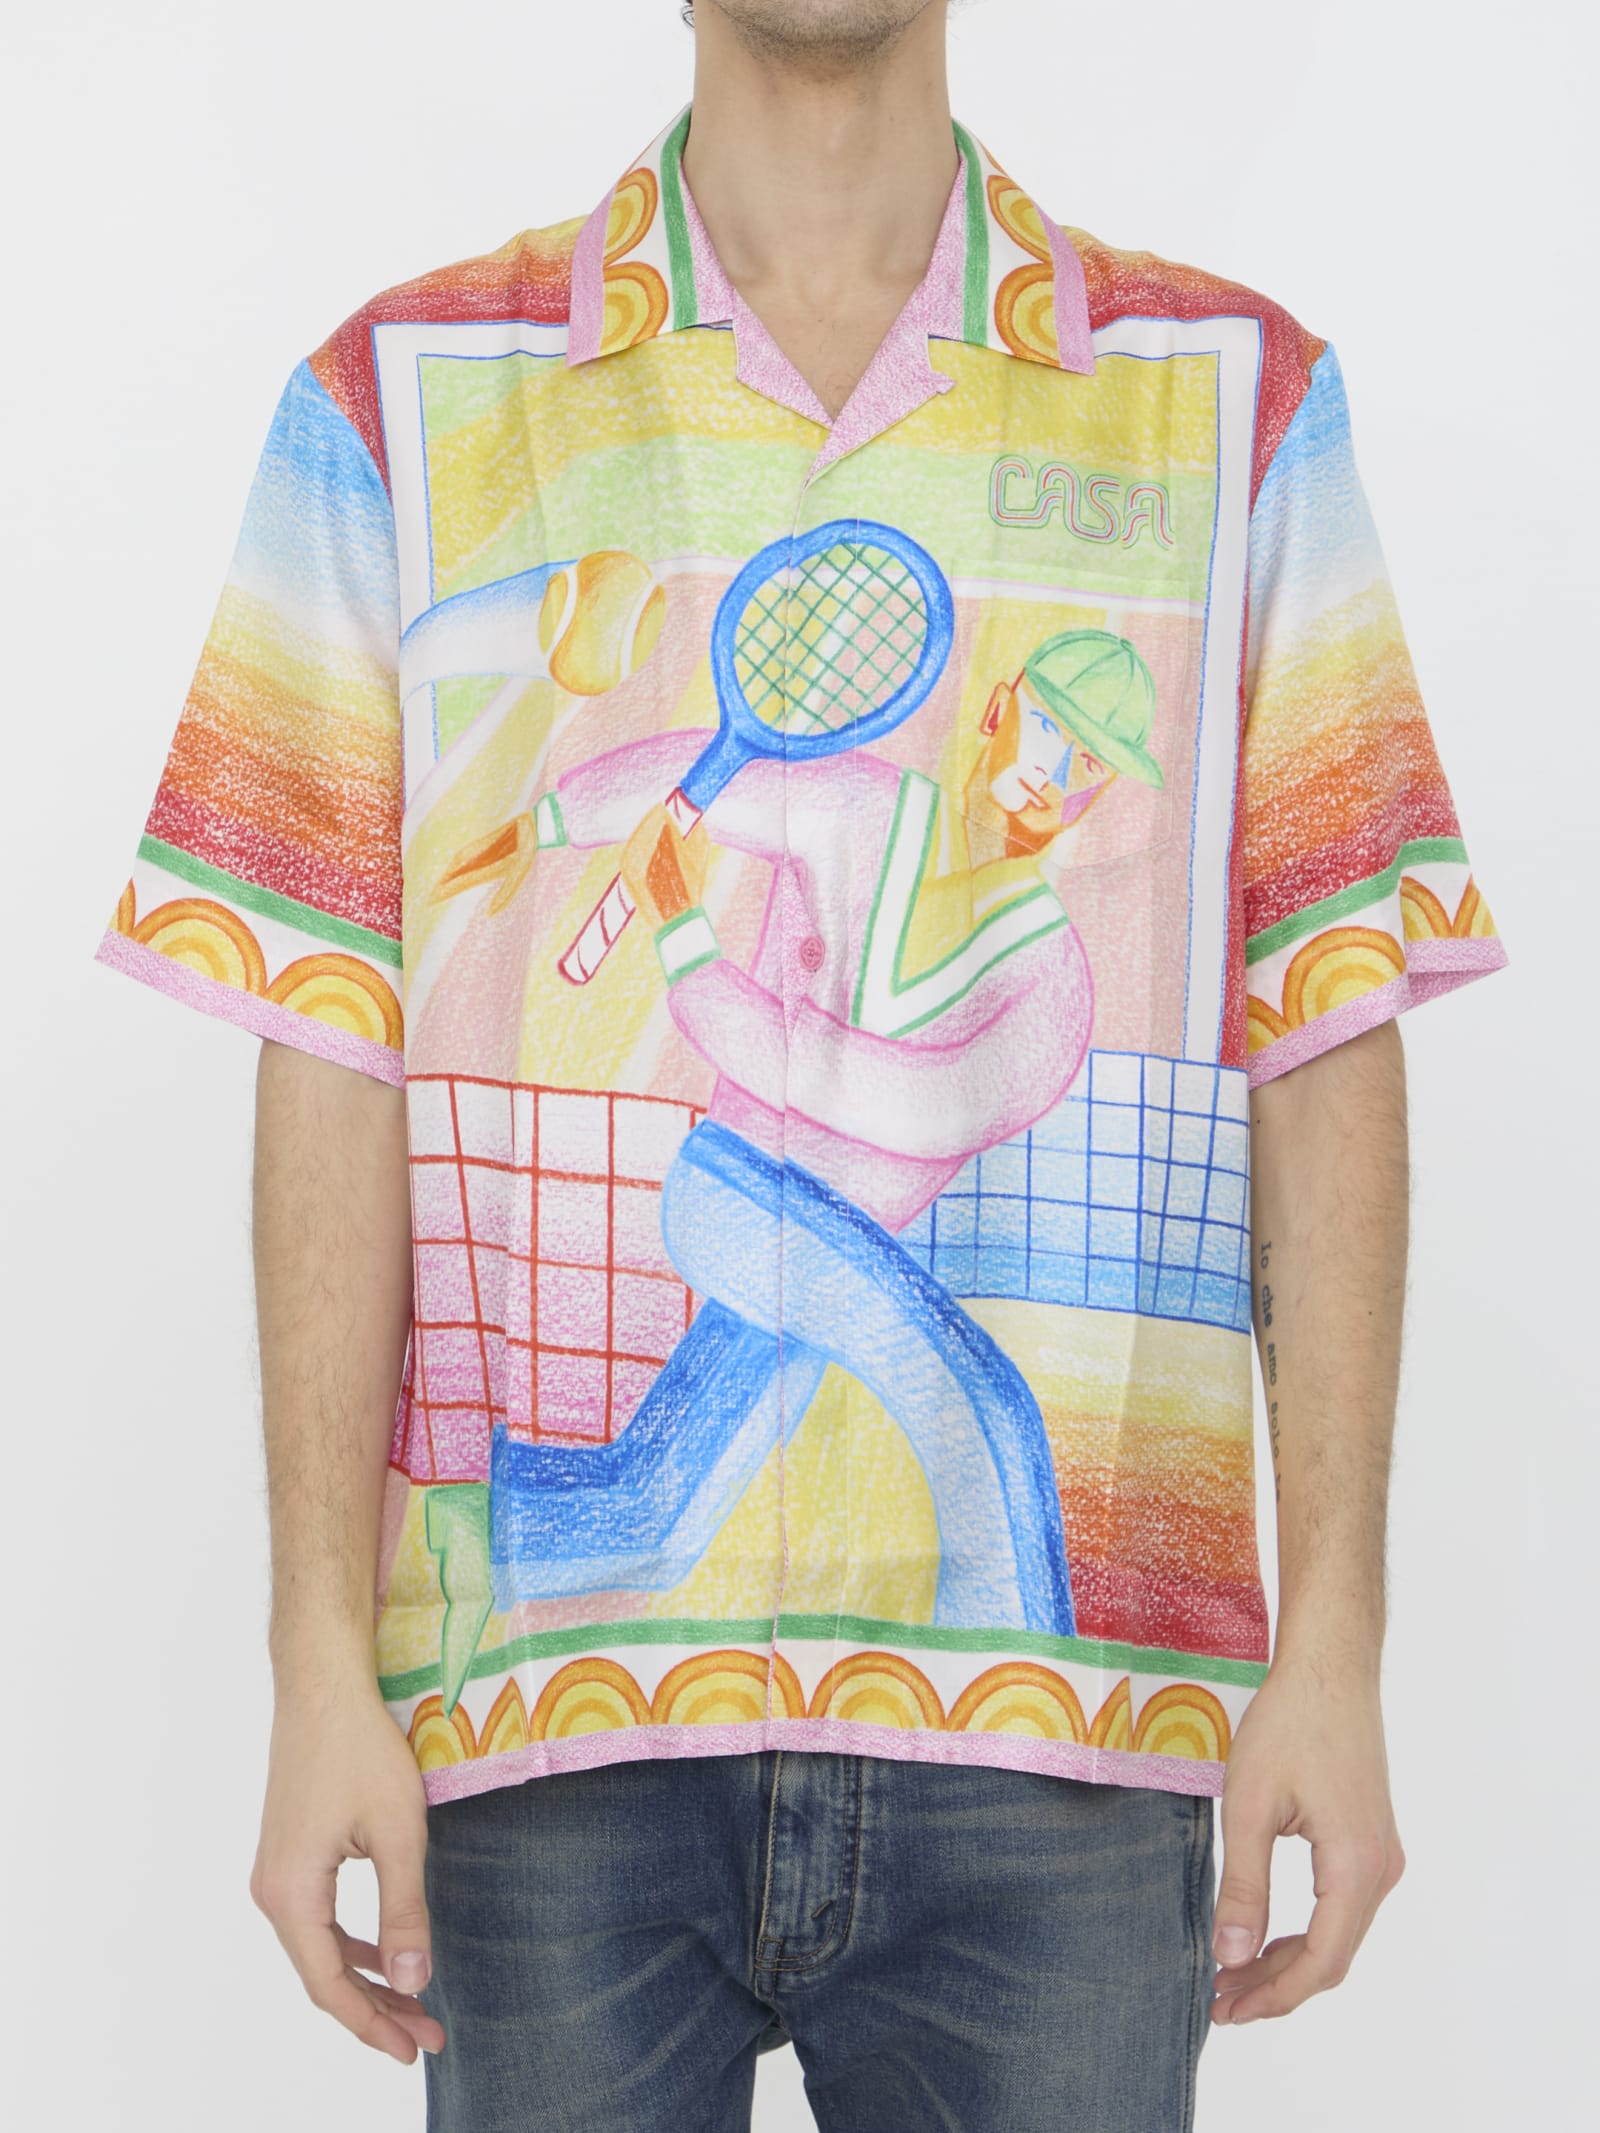 Crayon Tennis Player Shirt